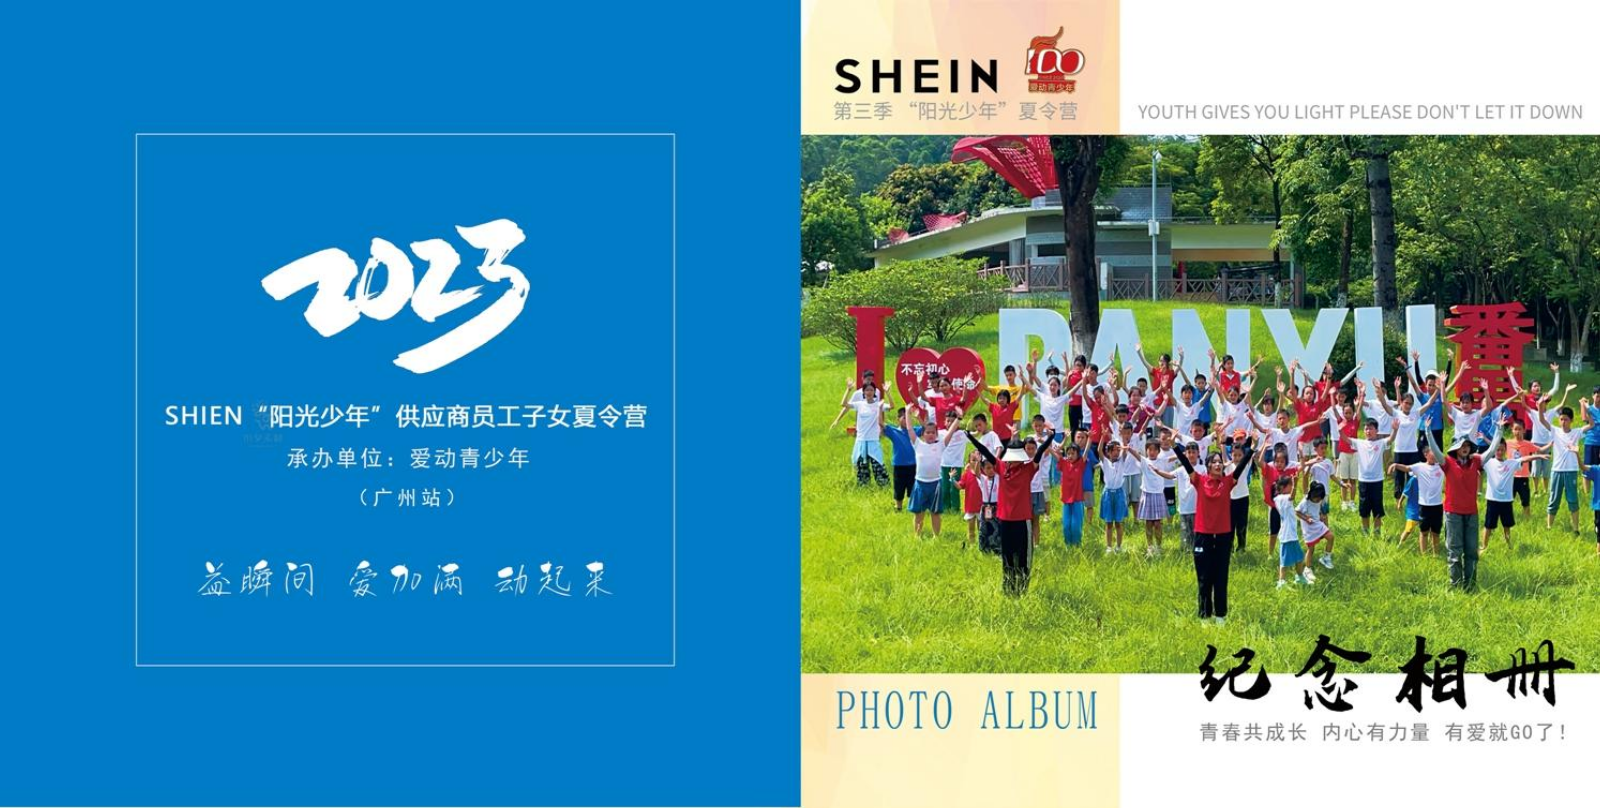 【SHEIN.爱动】阳光少年夏令营(广州站)纪念图册